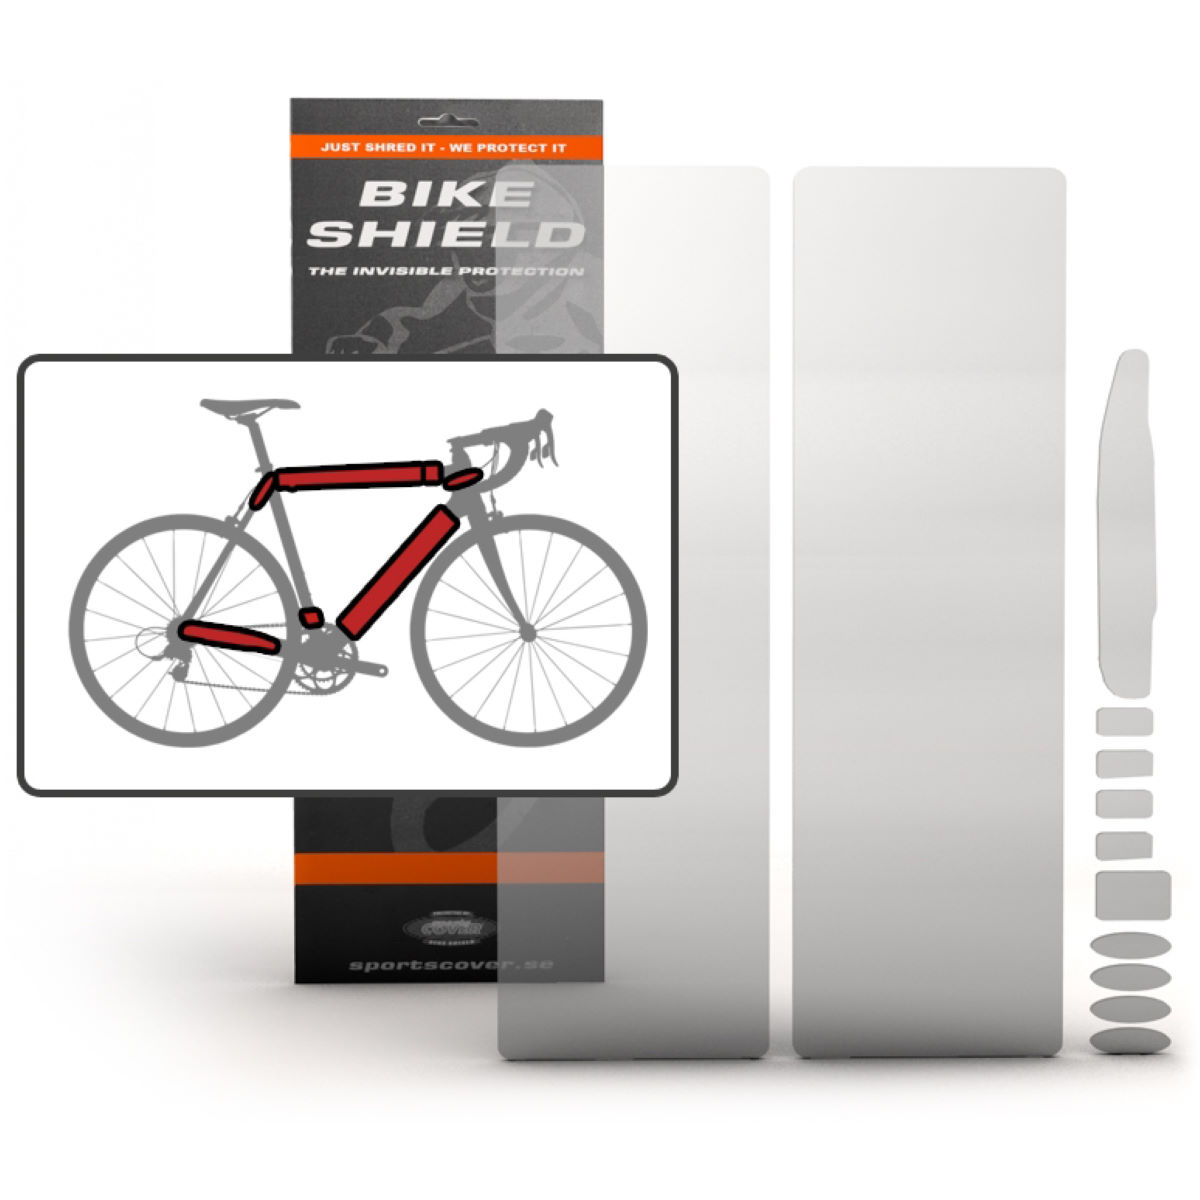 Pack completo de protectores sobredimensionados Bike Shield - Protectores de cuadro